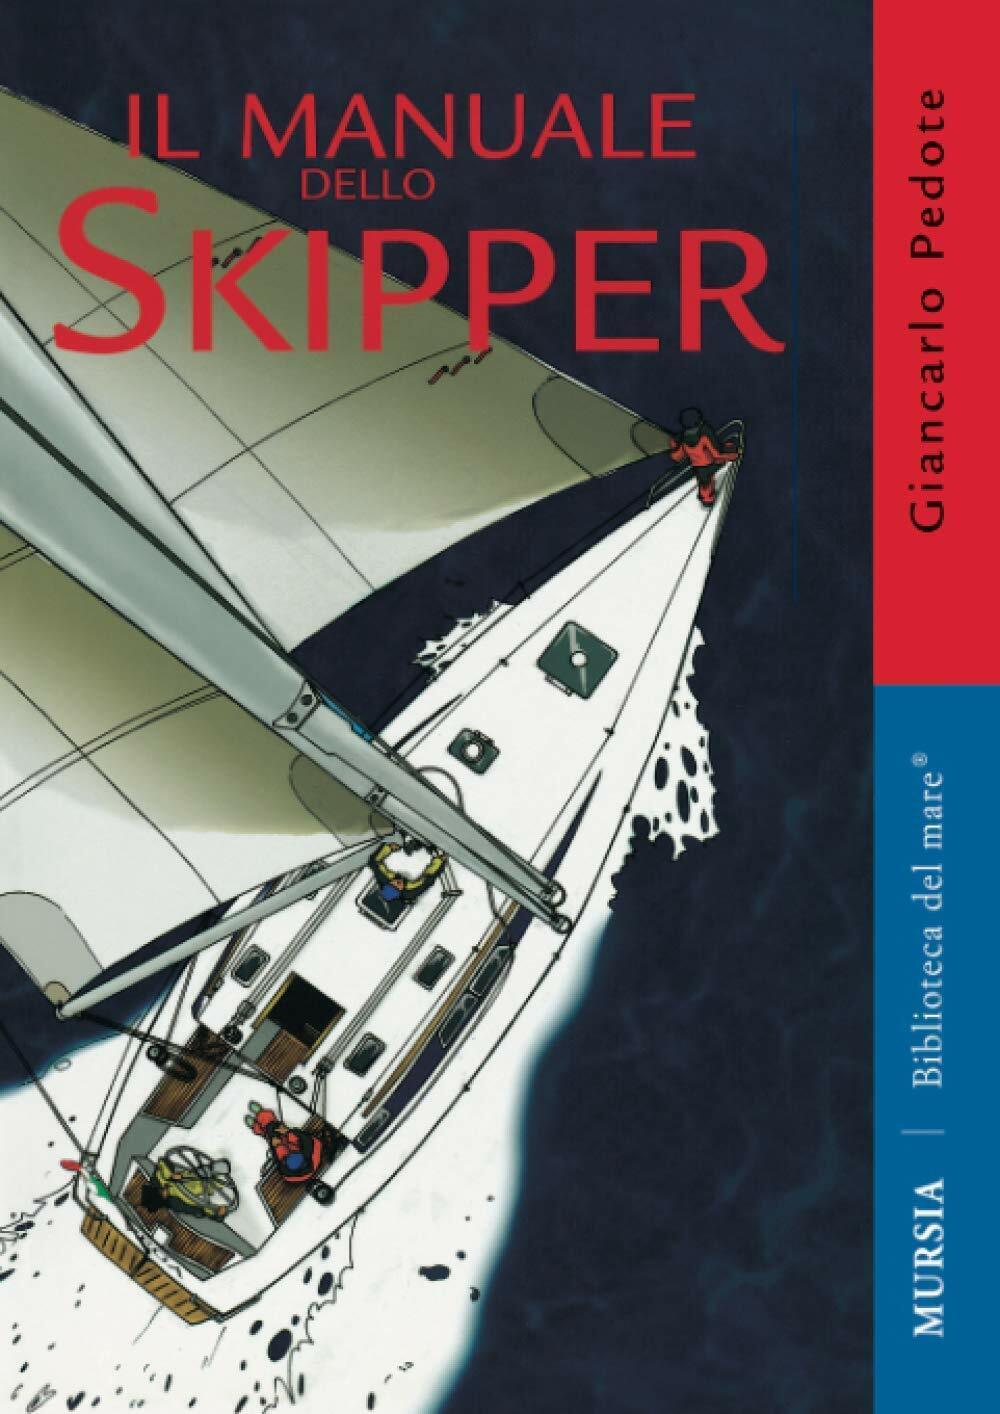 Il manuale dello skipper - Giancarlo Pedote - Mursia, 2011